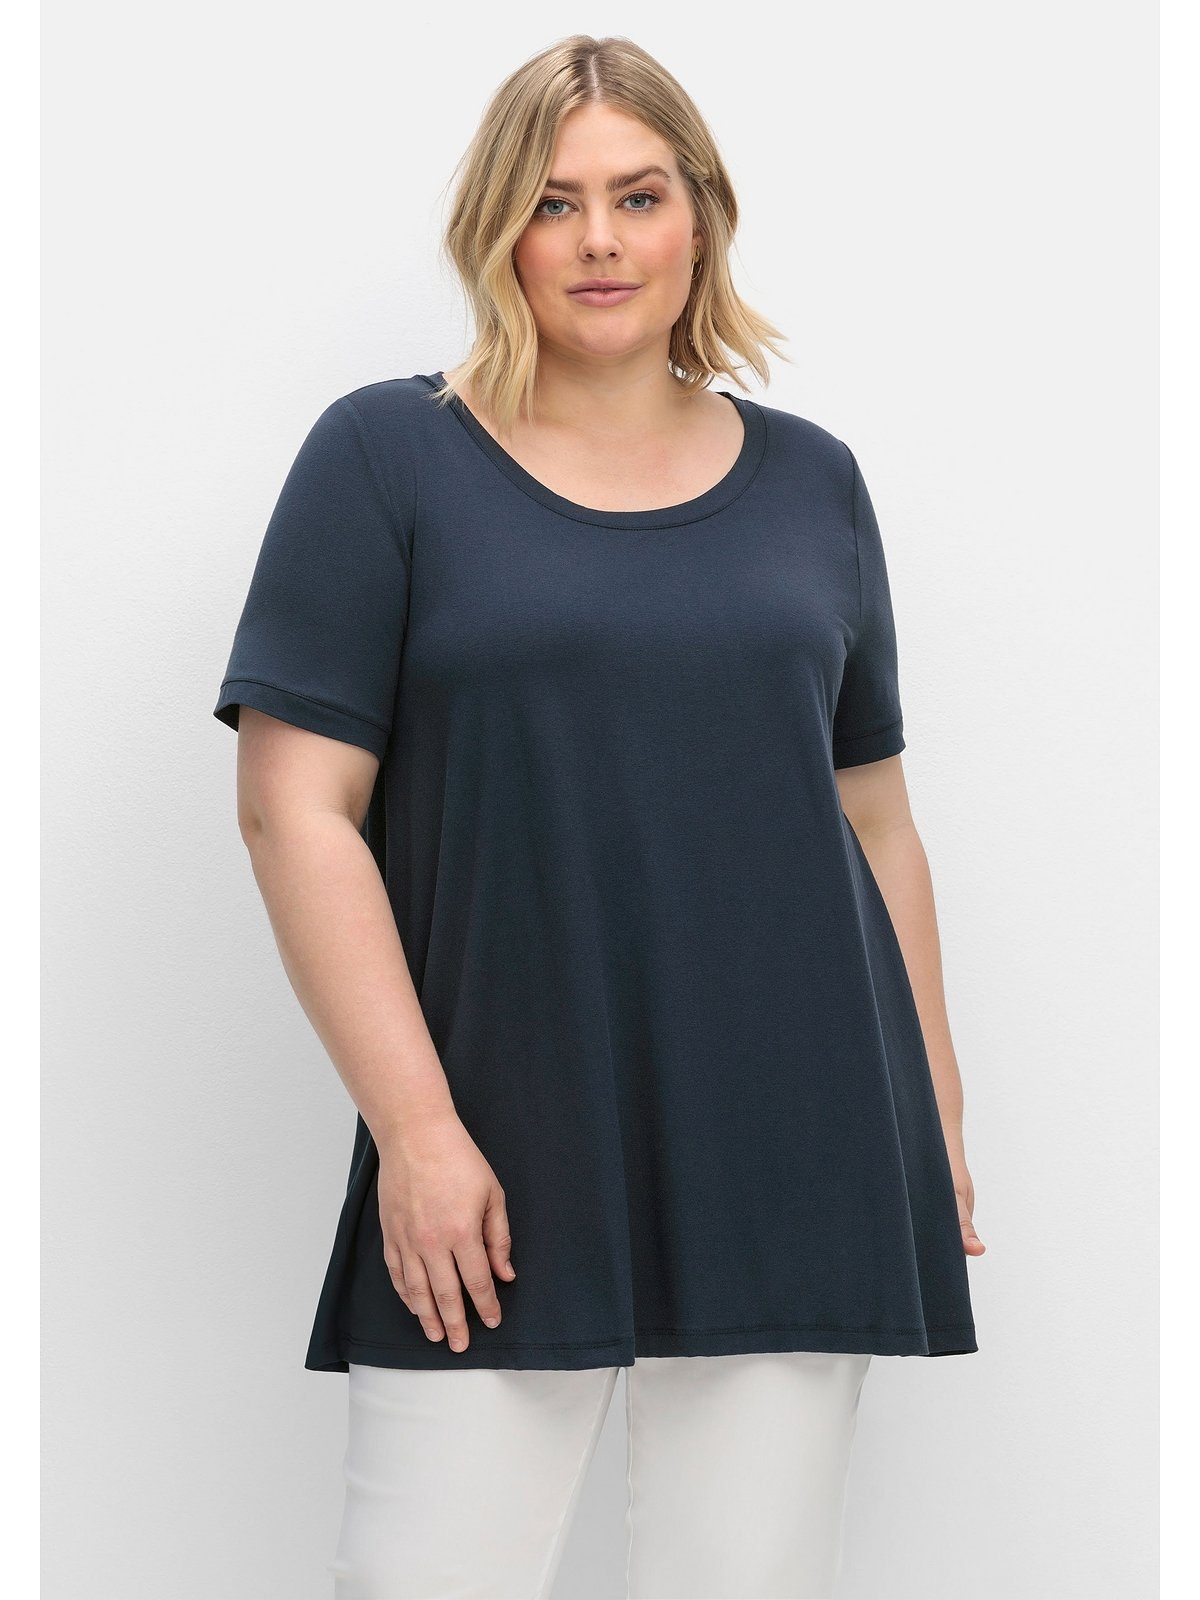 Sheego T-Shirt Große Größen mit Rückenteil aus luftigem Blusenstoff